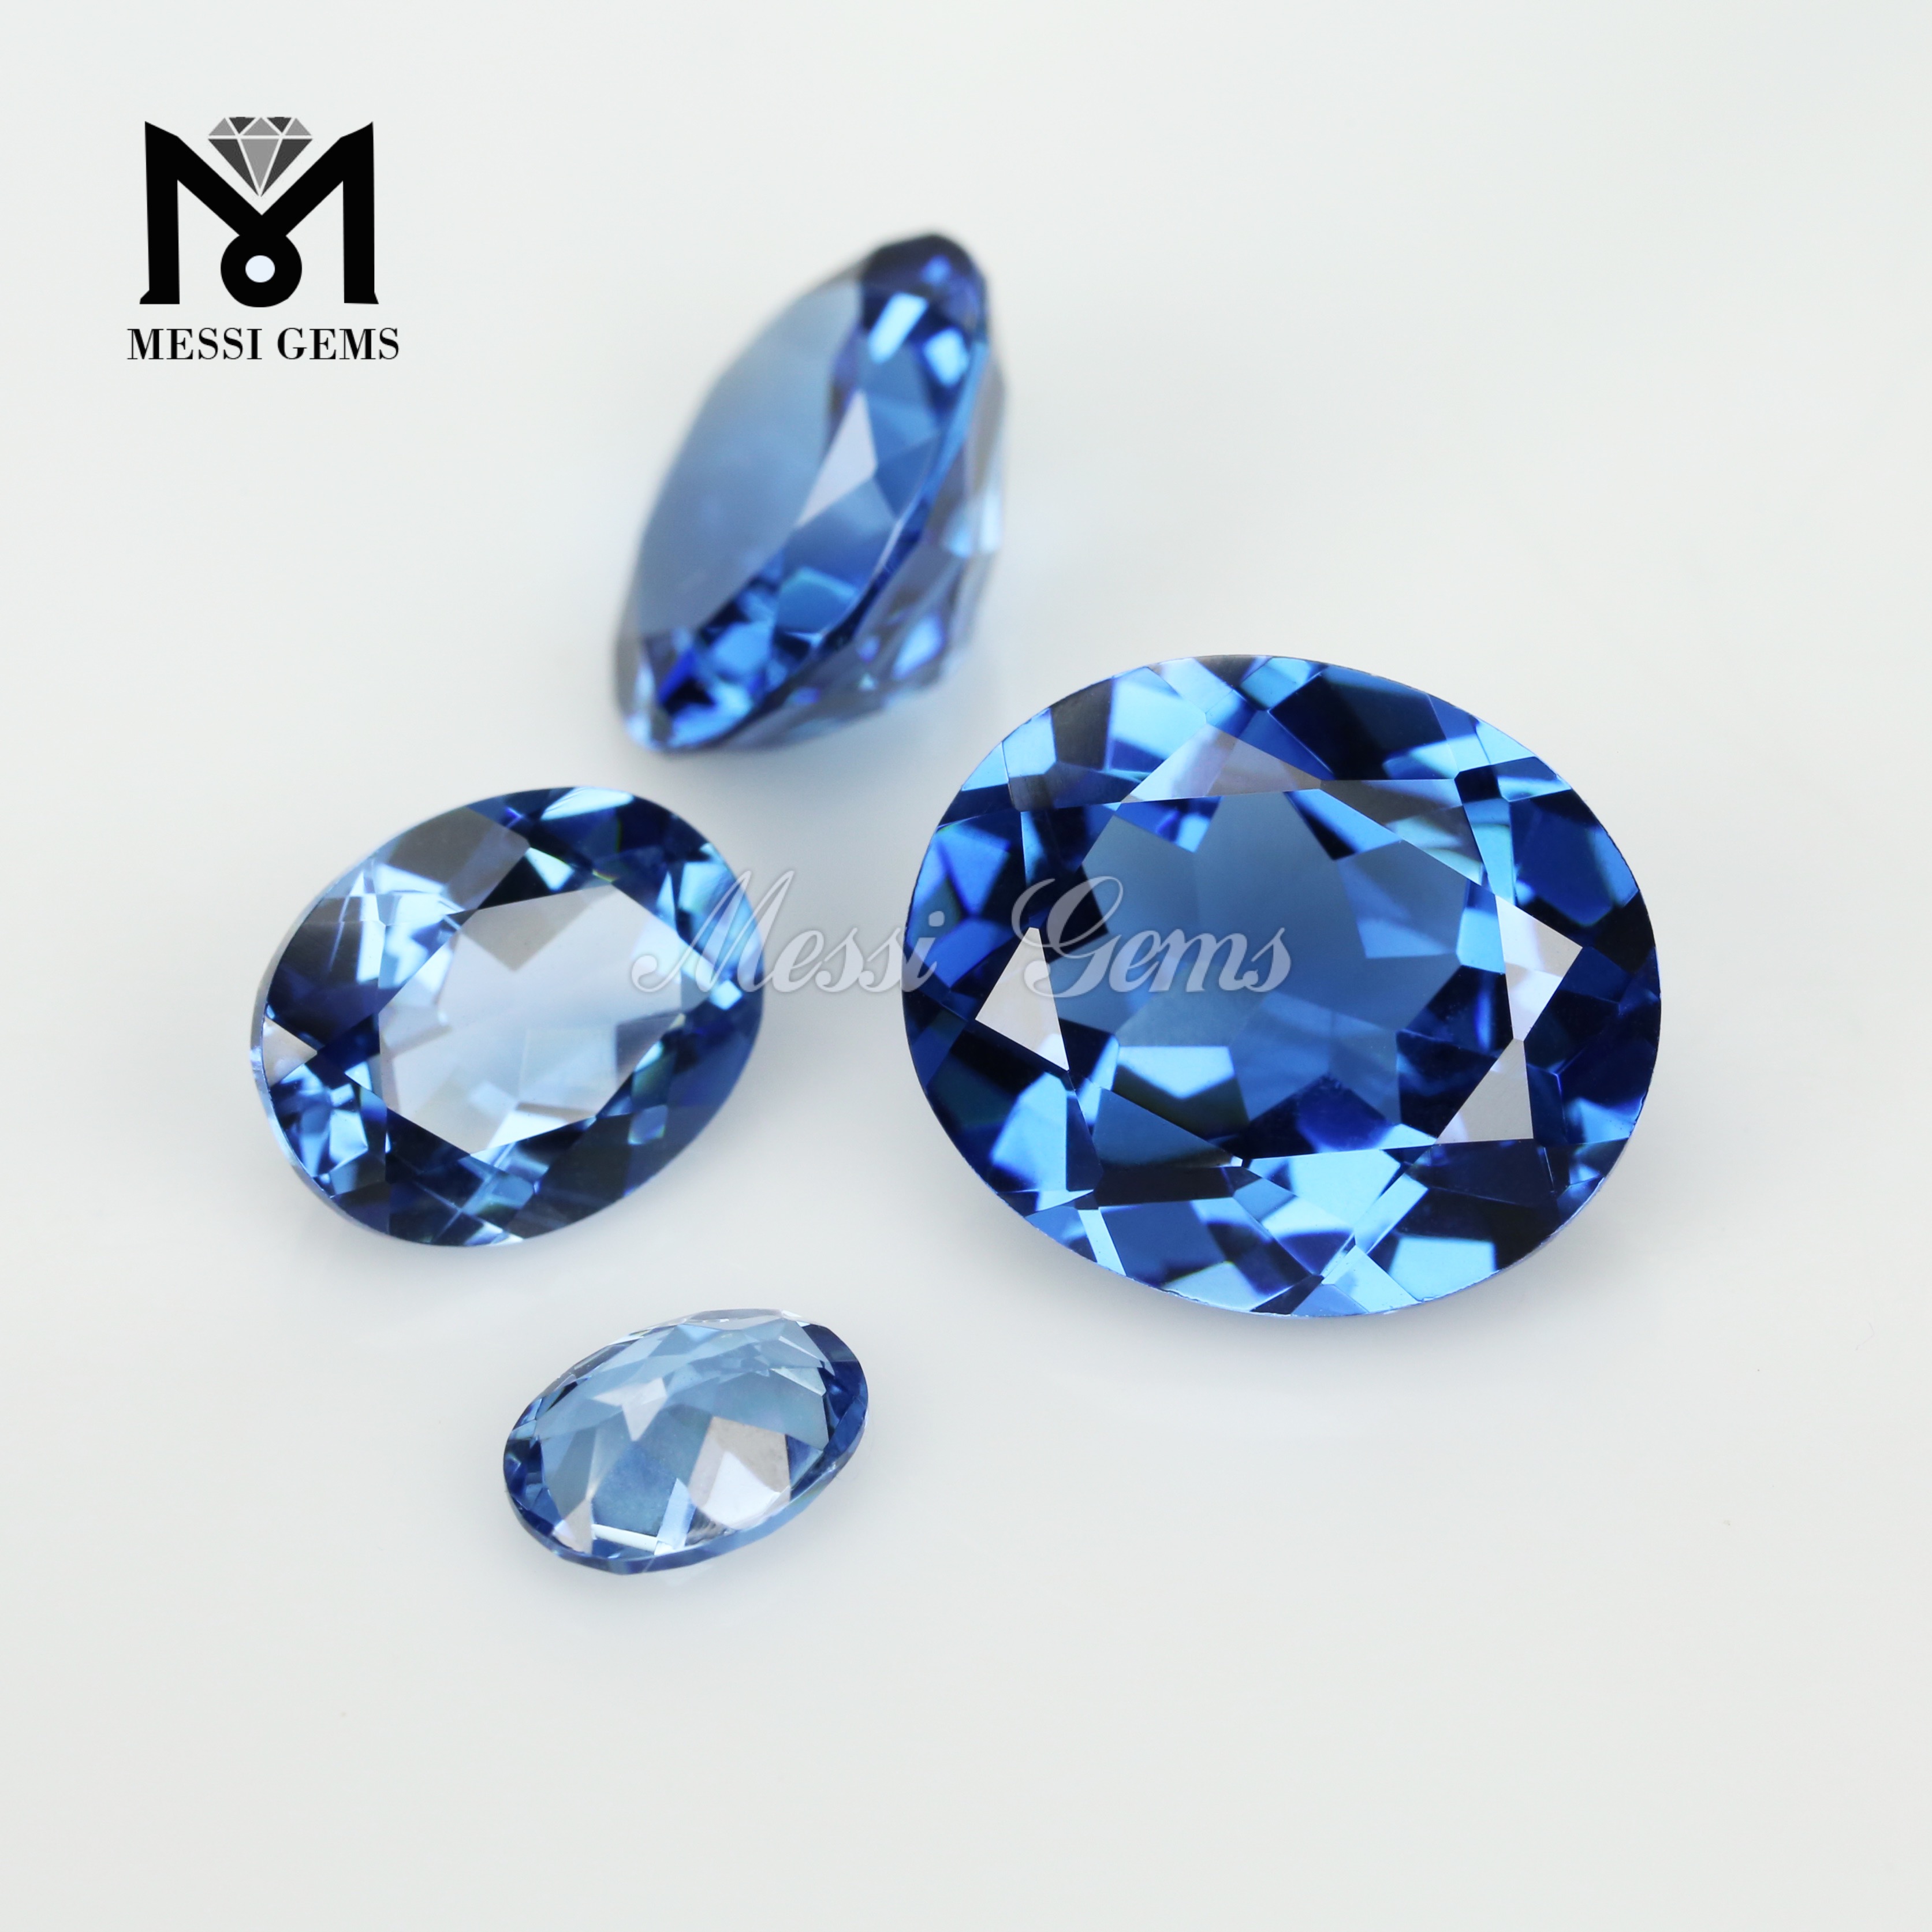 Синий сапфир овальной огранки, созданный в лаборатории, драгоценный камень наноситал